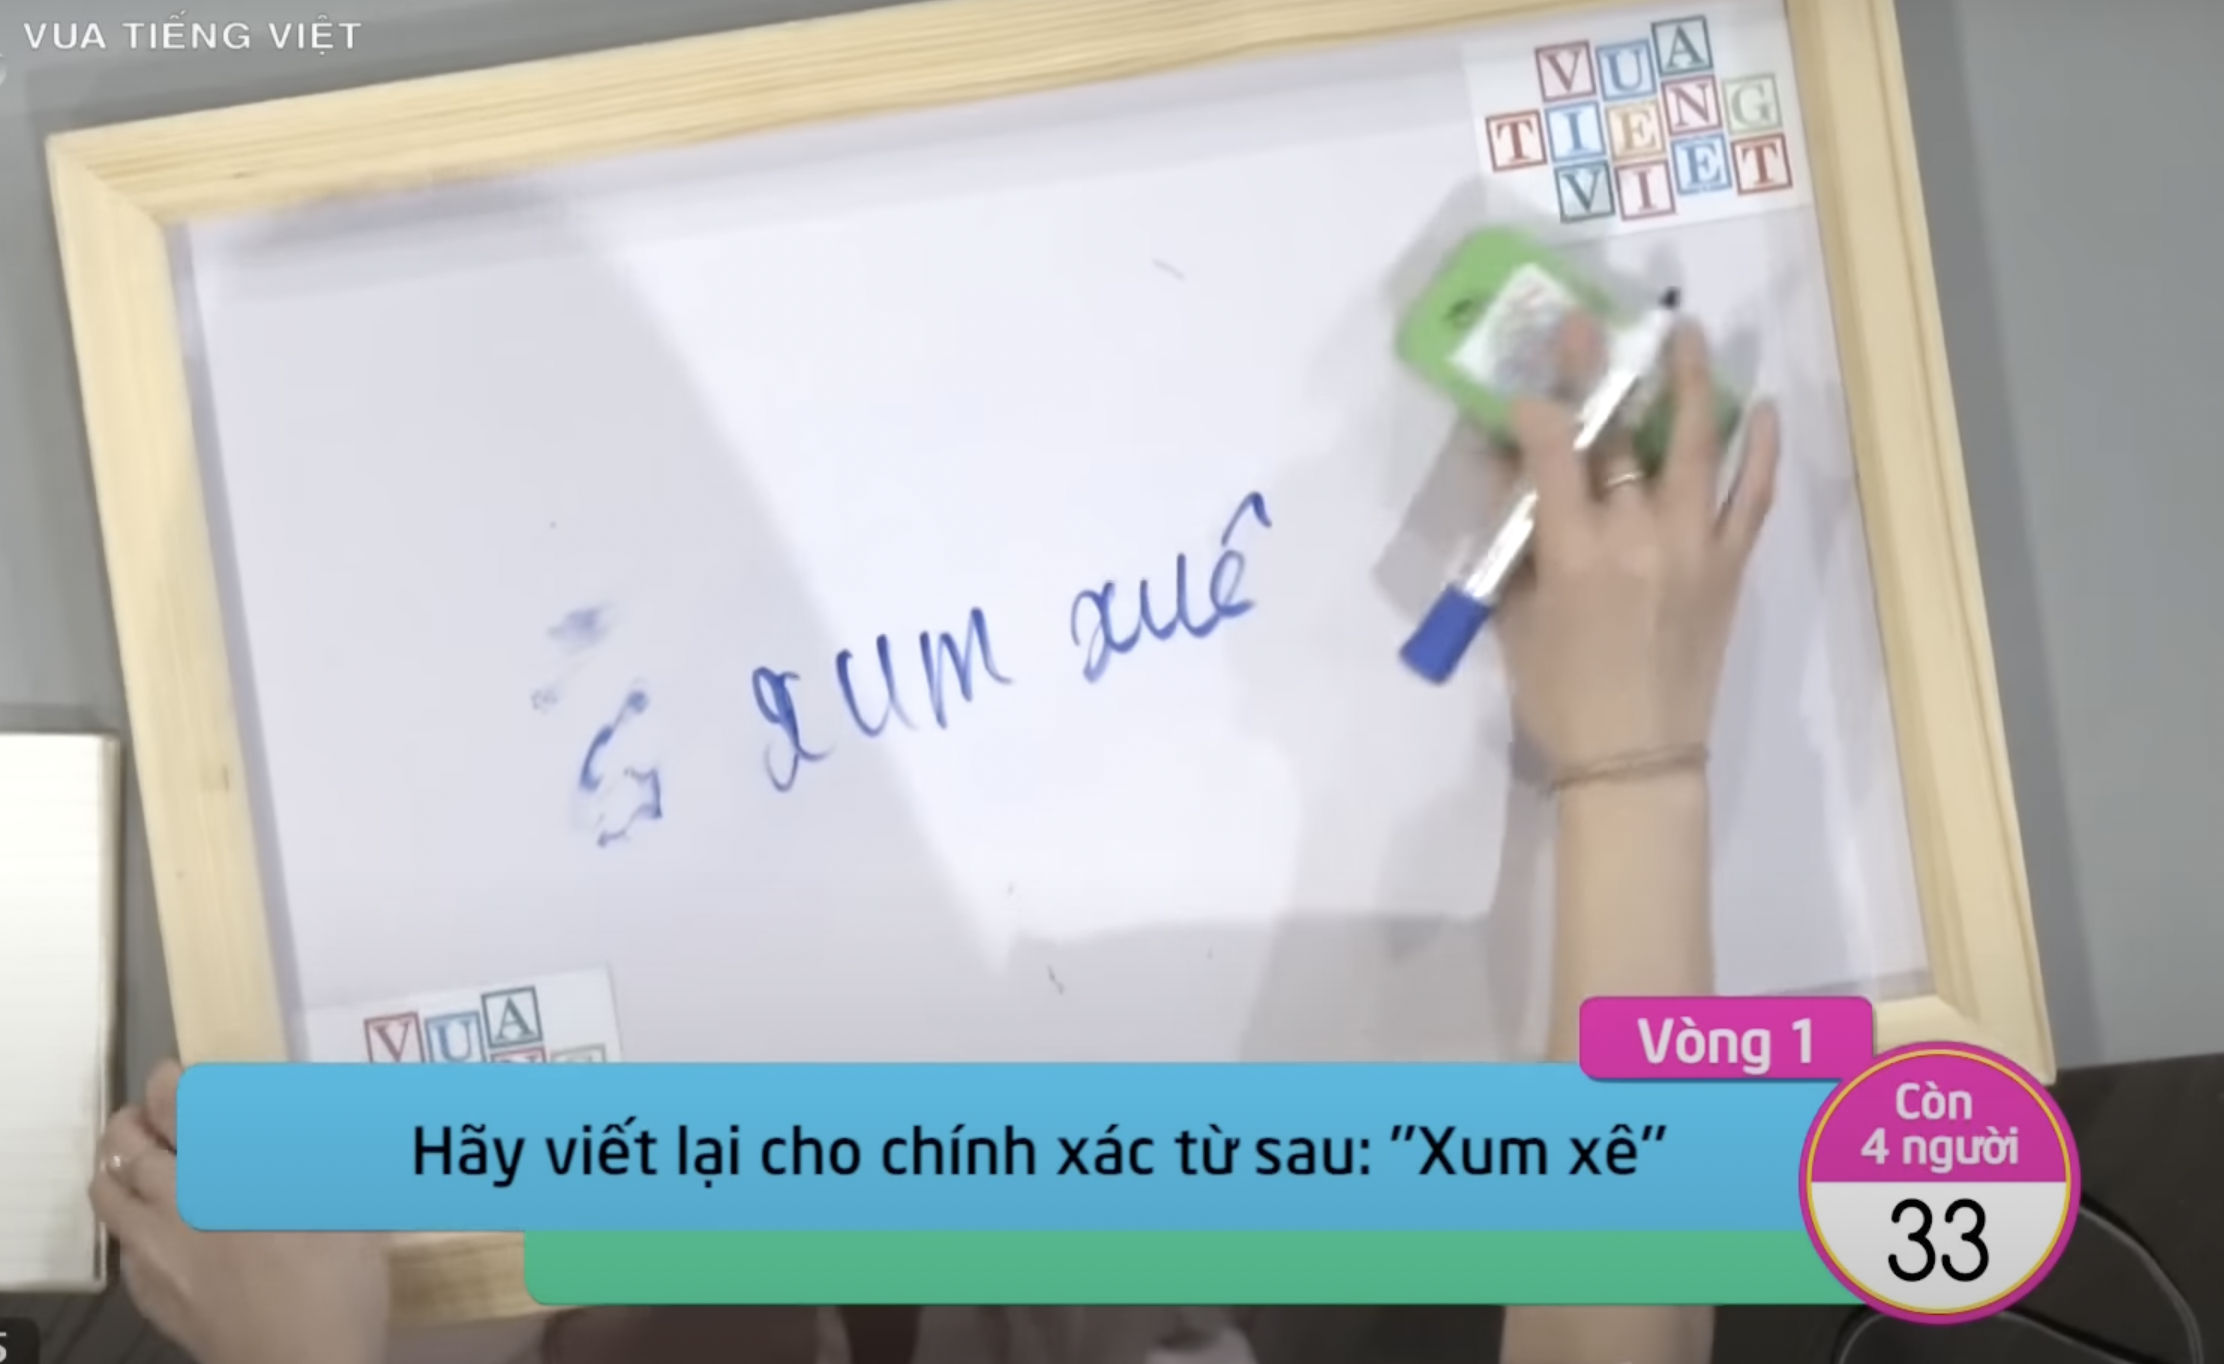 Vua tiếng Việt liên tiếp bị tố đầy sạn, chuyên gia ngôn ngữ học lên tiếng